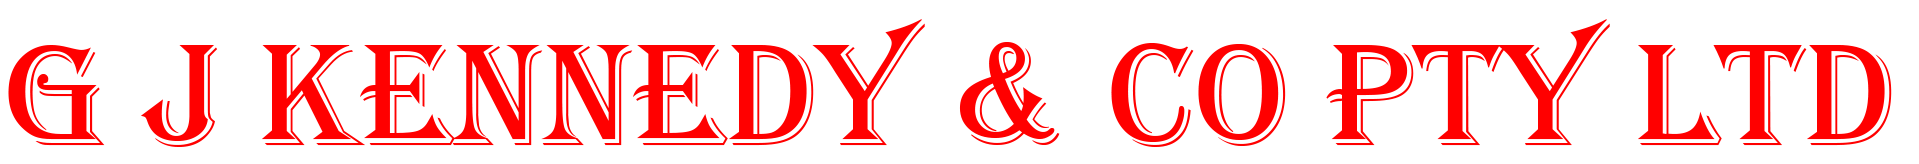 G J KENNEDY & CO - logo